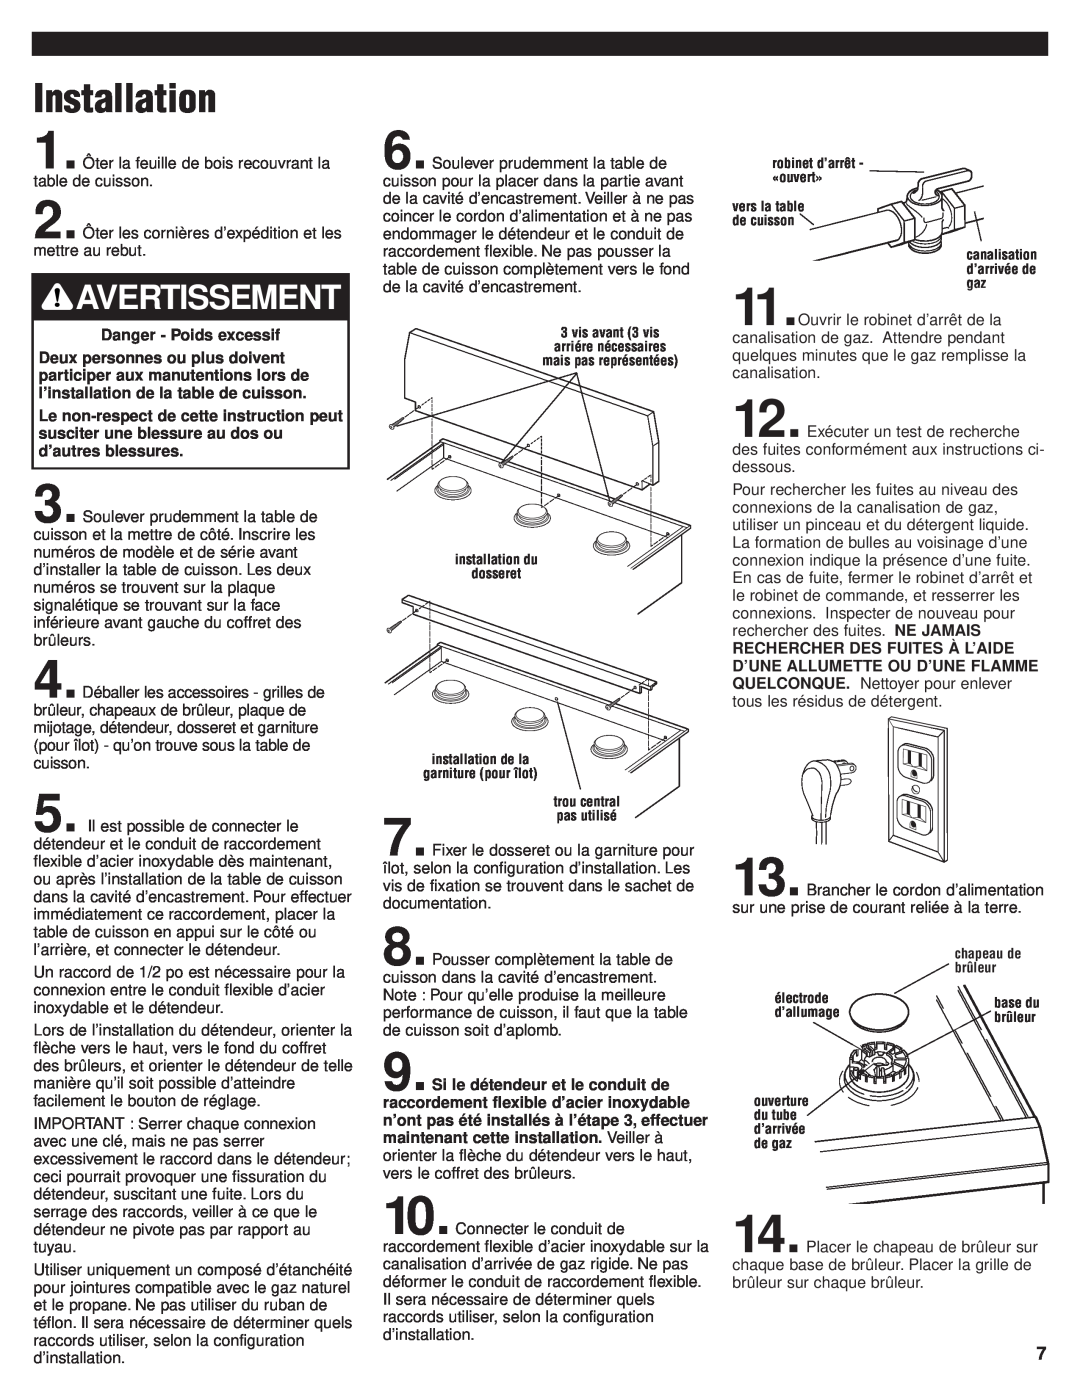 KitchenAid 8284670 installation instructions Installation, Avertissement, Danger - Poids excessif 